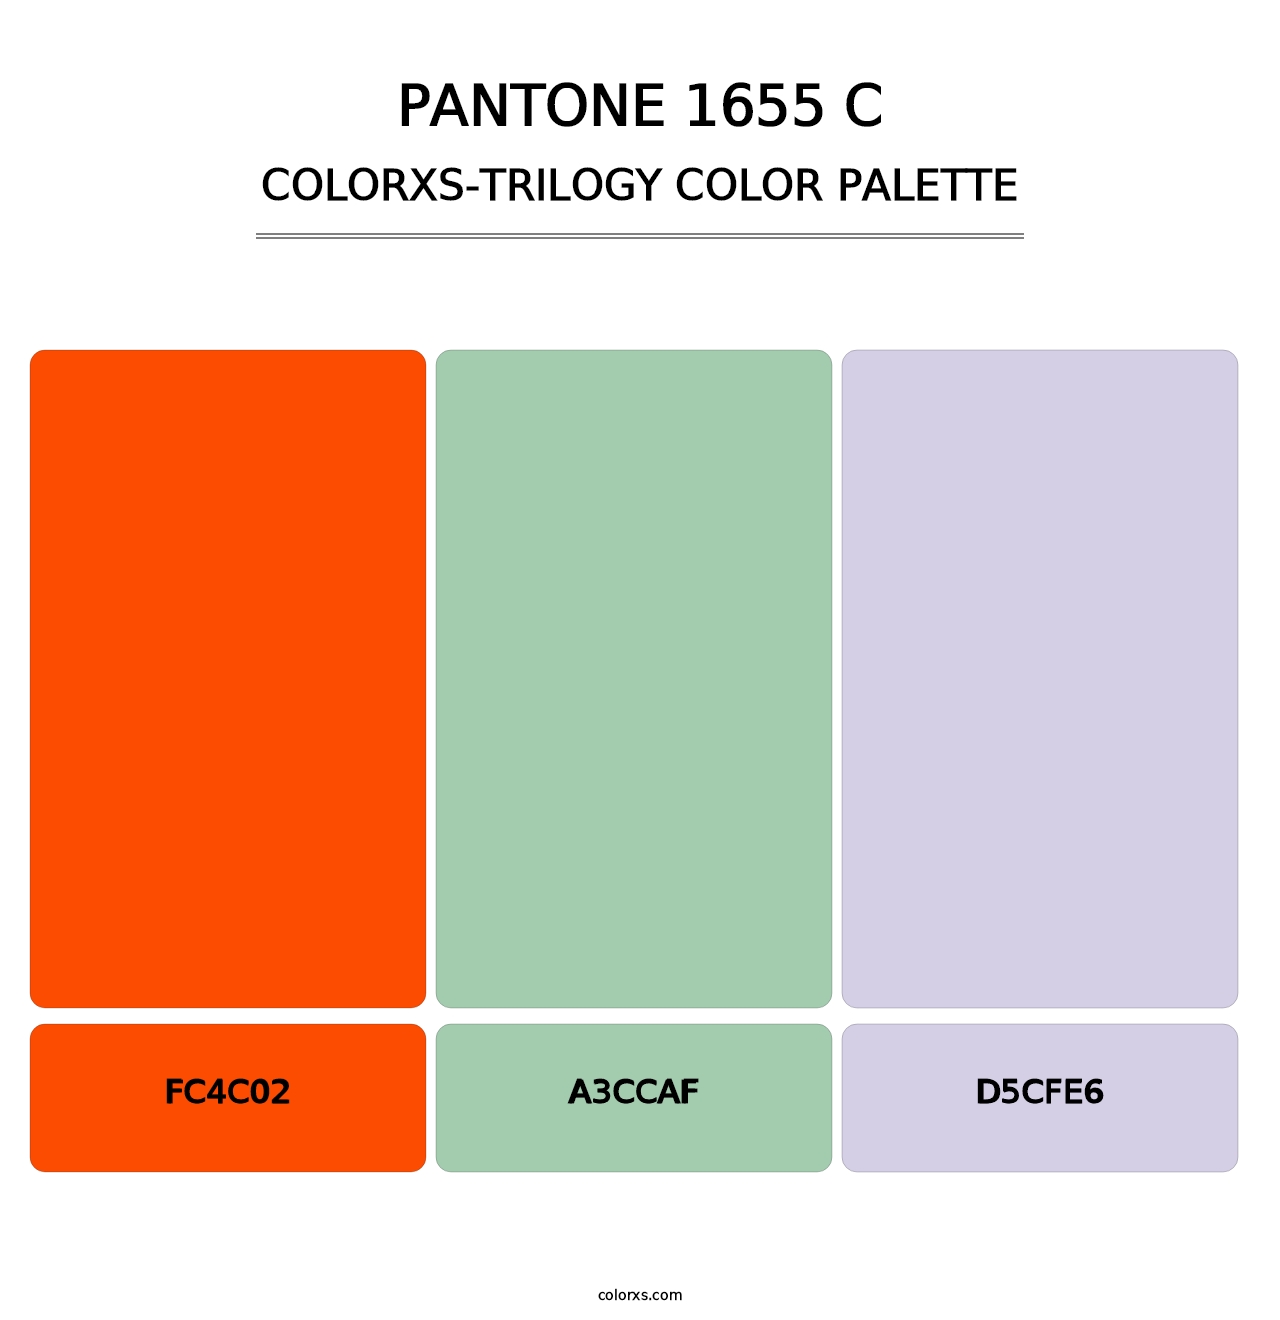 PANTONE 1655 C - Colorxs Trilogy Palette